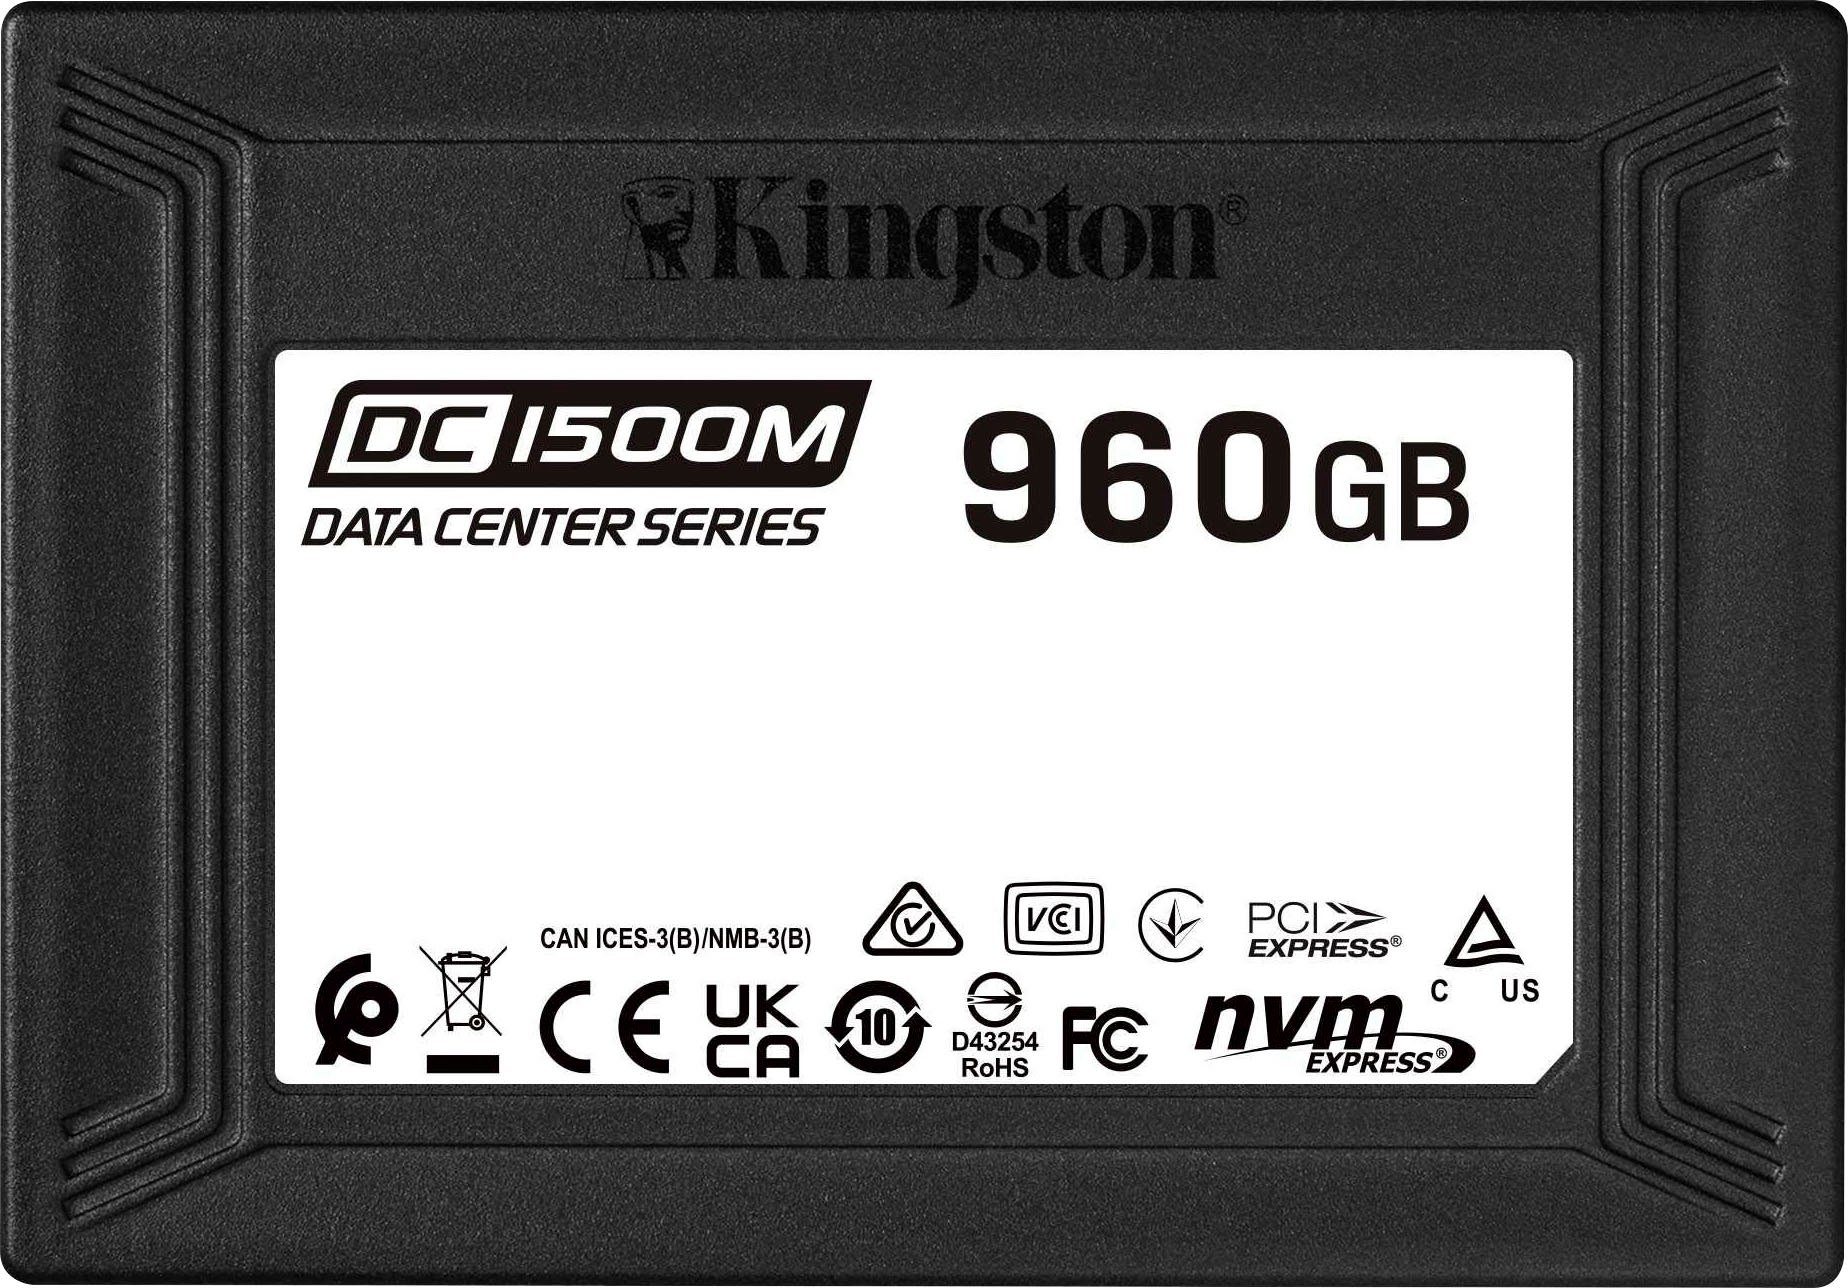 Settlers modtagende sigte Kingston DC1500M U.2 ENTERPRISE-SSD 7,68TB interne SSD (7,68 TB) 2,5" 3100  MB/S Lesegeschwindigkeit, 2700 MB/S Schreibgeschwindigkeit